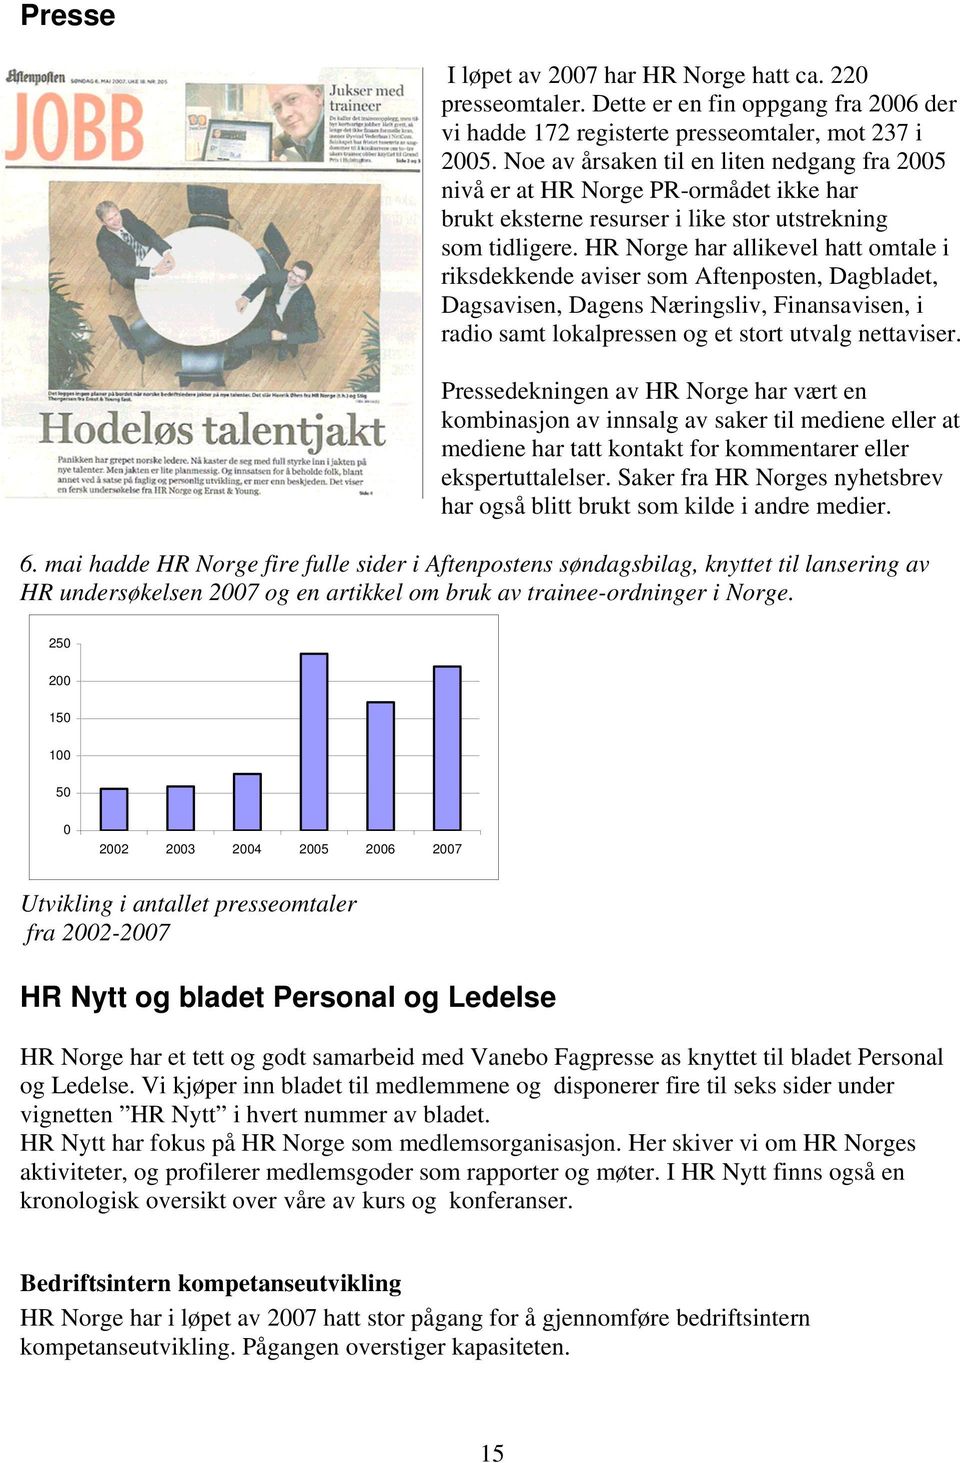 HR Norge har allikevel hatt omtale i riksdekkende aviser som Aftenposten, Dagbladet, Dagsavisen, Dagens Næringsliv, Finansavisen, i radio samt lokalpressen og et stort utvalg nettaviser.